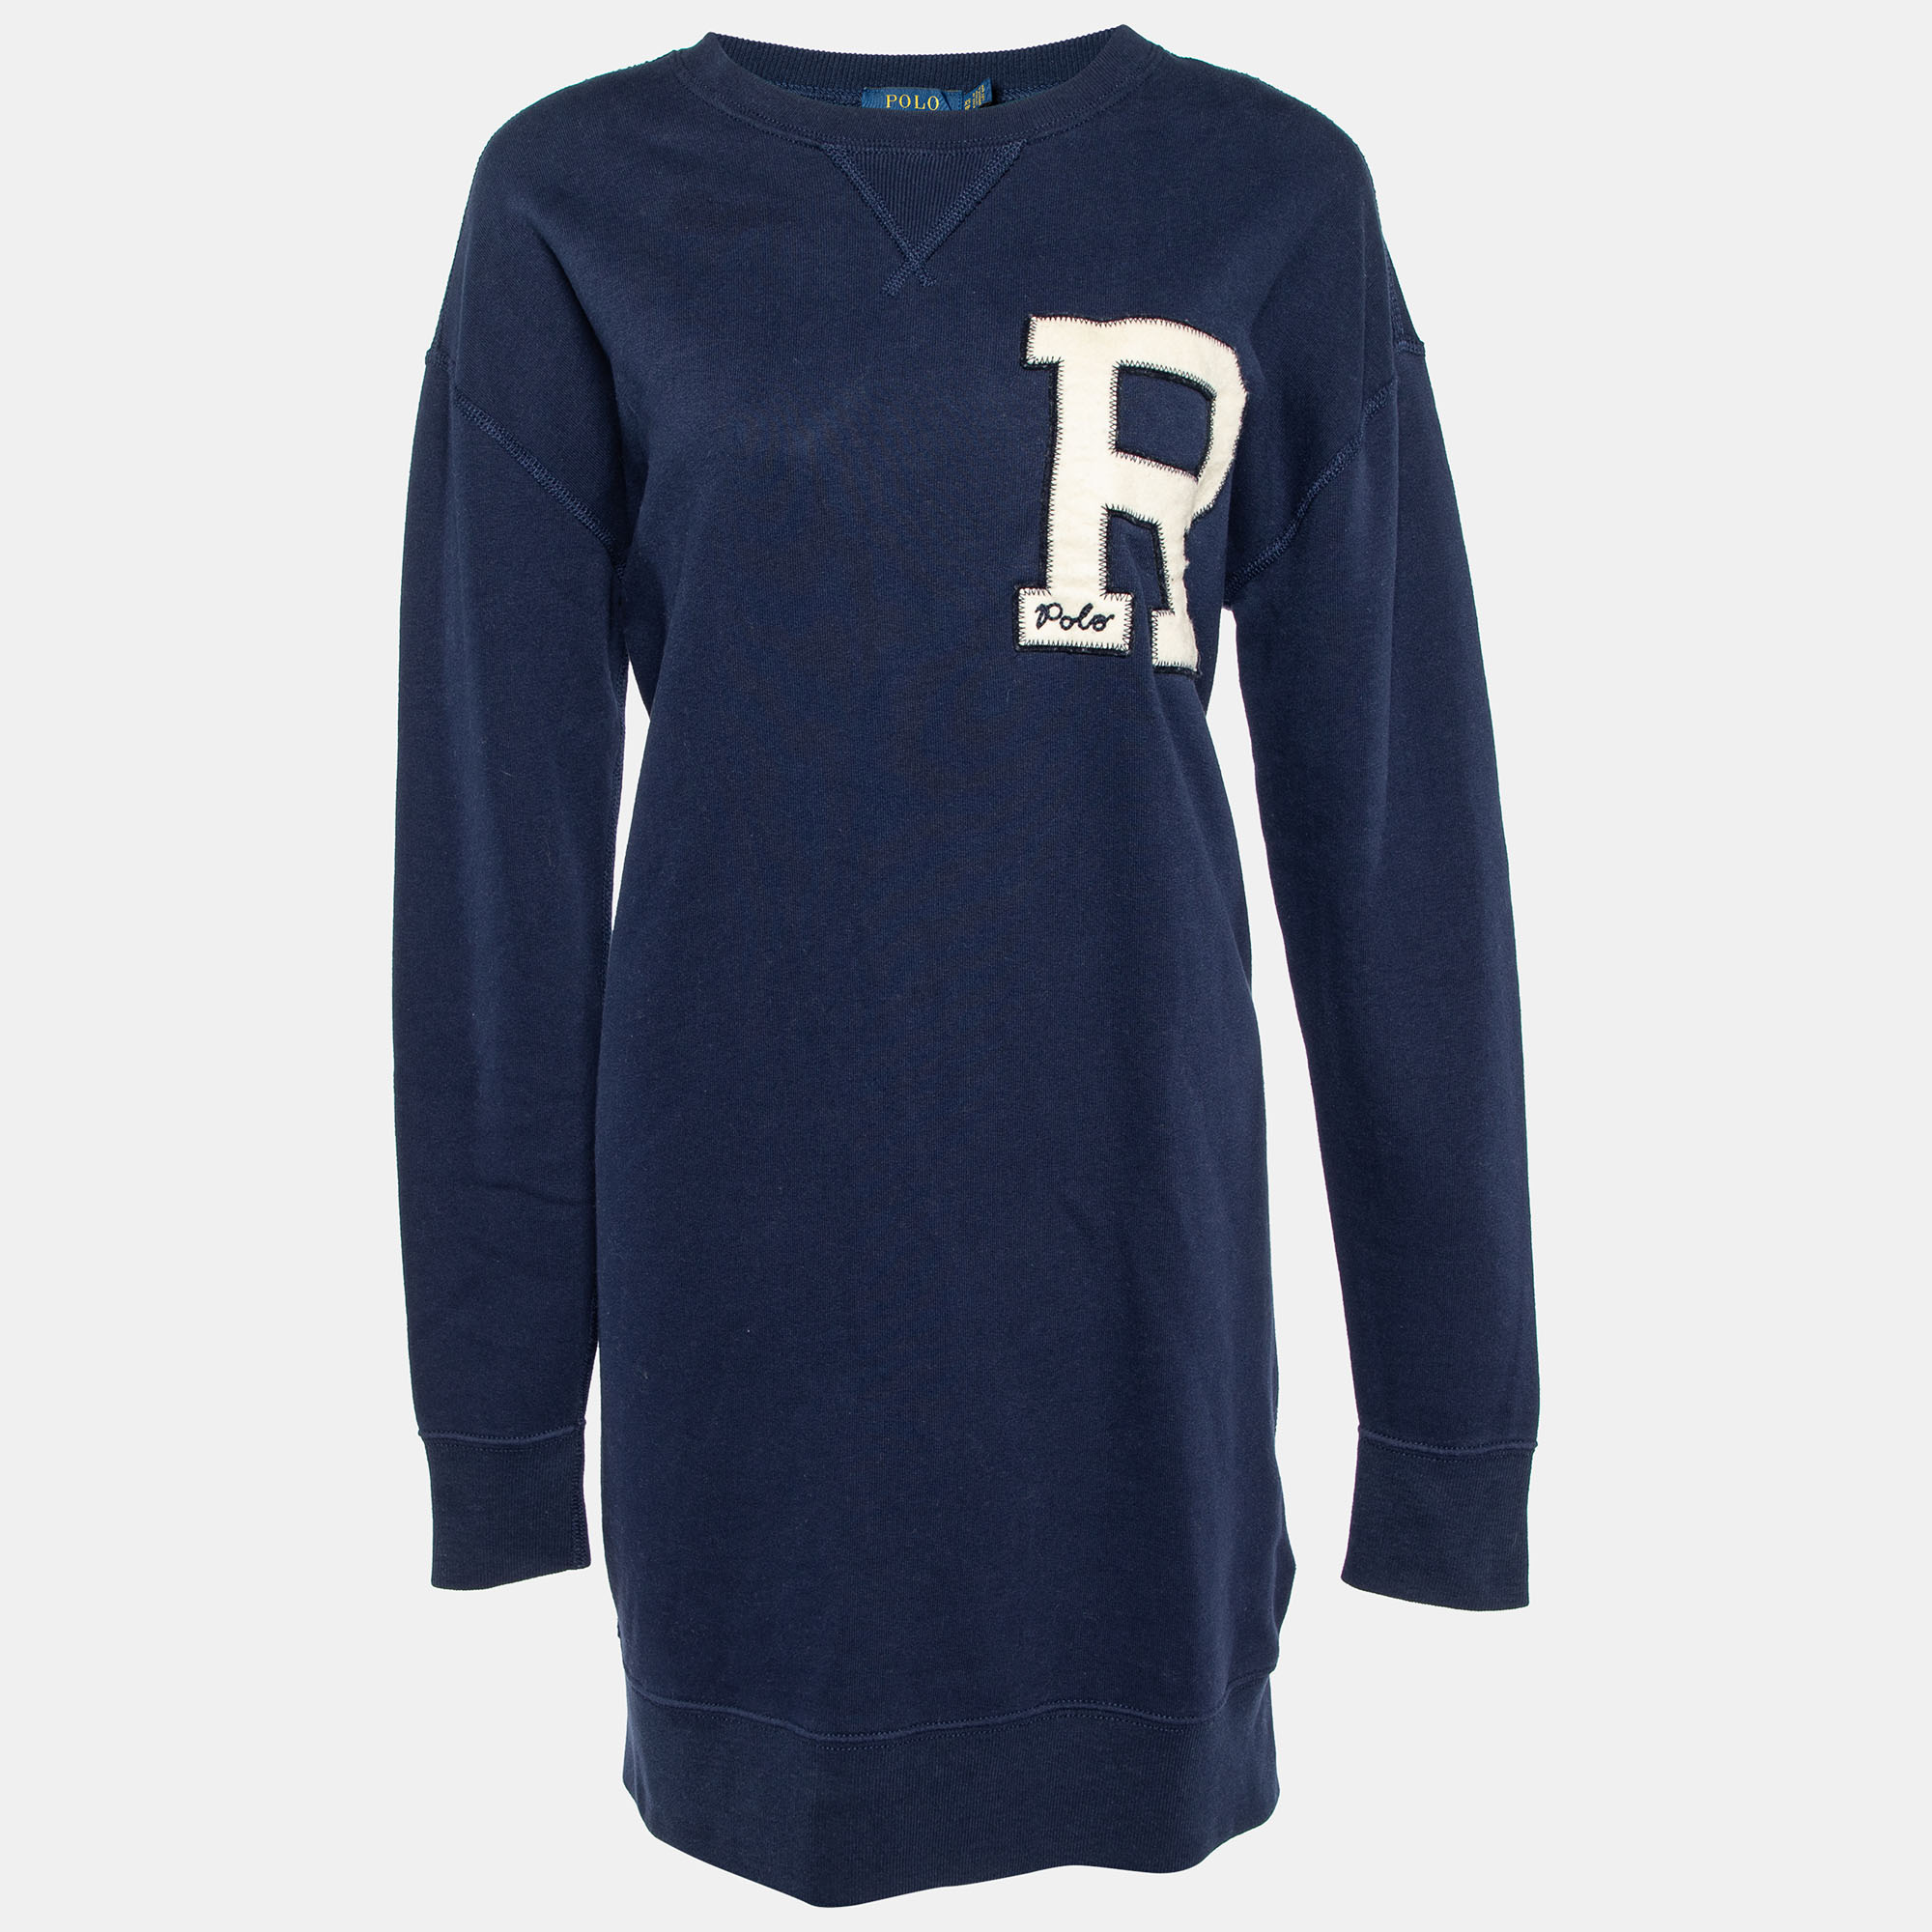 Polo ralph lauren navy blue letter applique cotton knit sweater dress xs